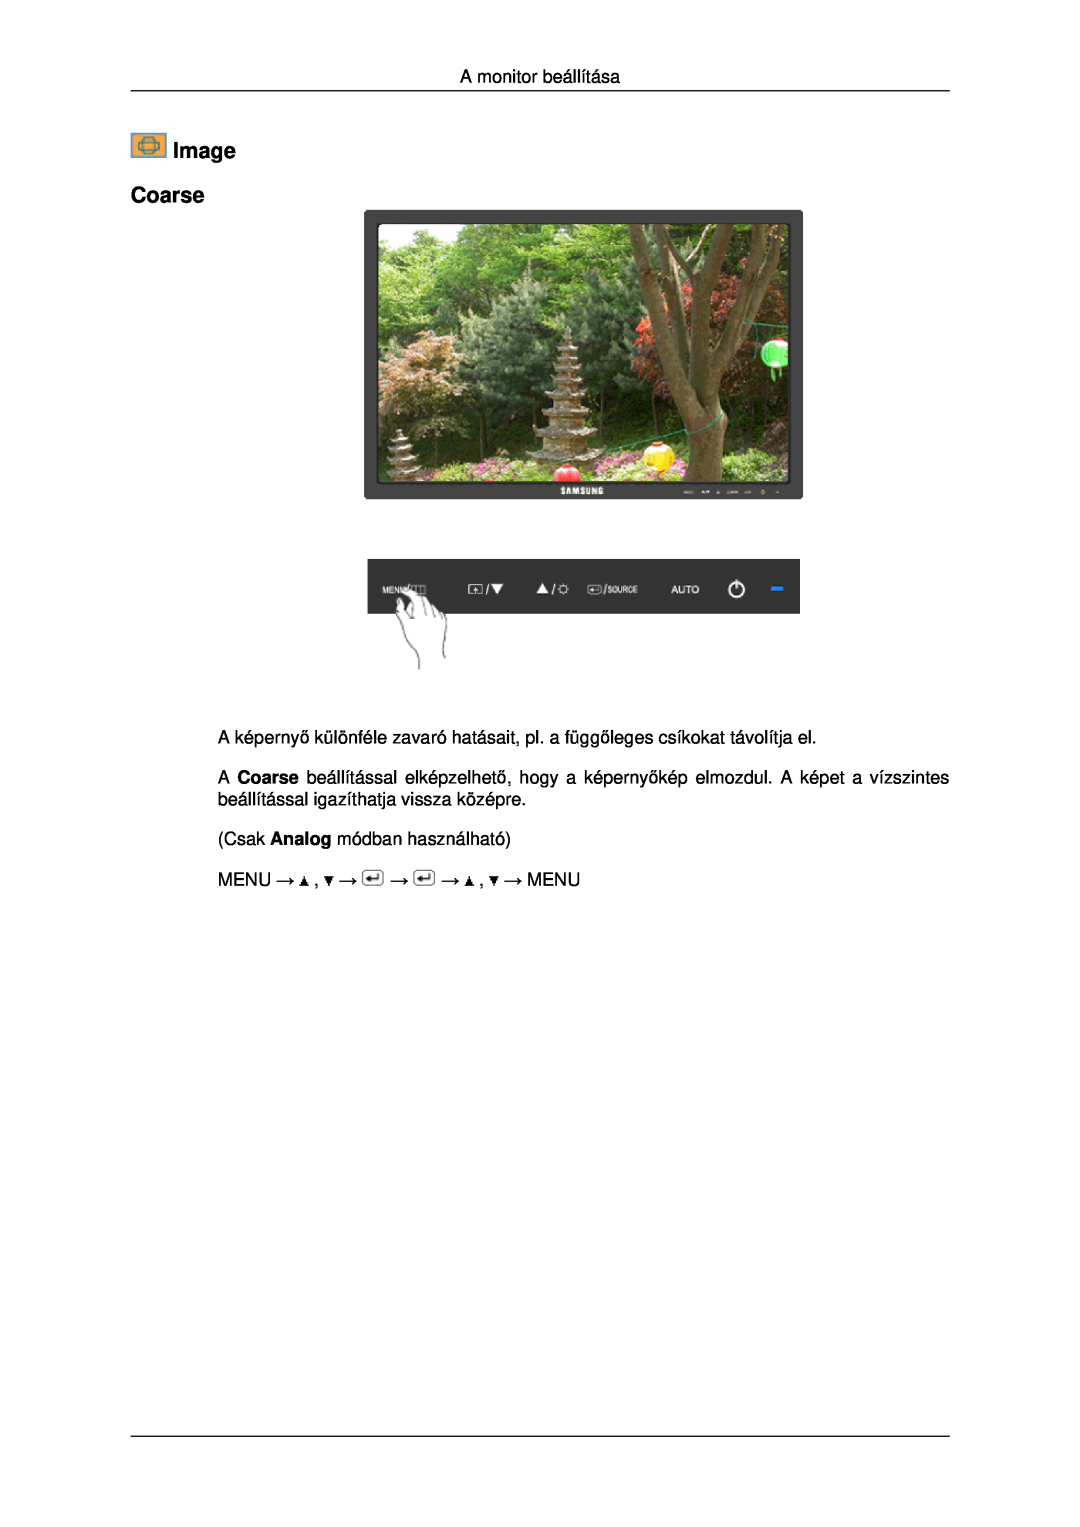 Samsung LS22MYDESC/EDC manual Image Coarse, A monitor beállítása, Csak Analog módban használható MENU → , → → → , → MENU 